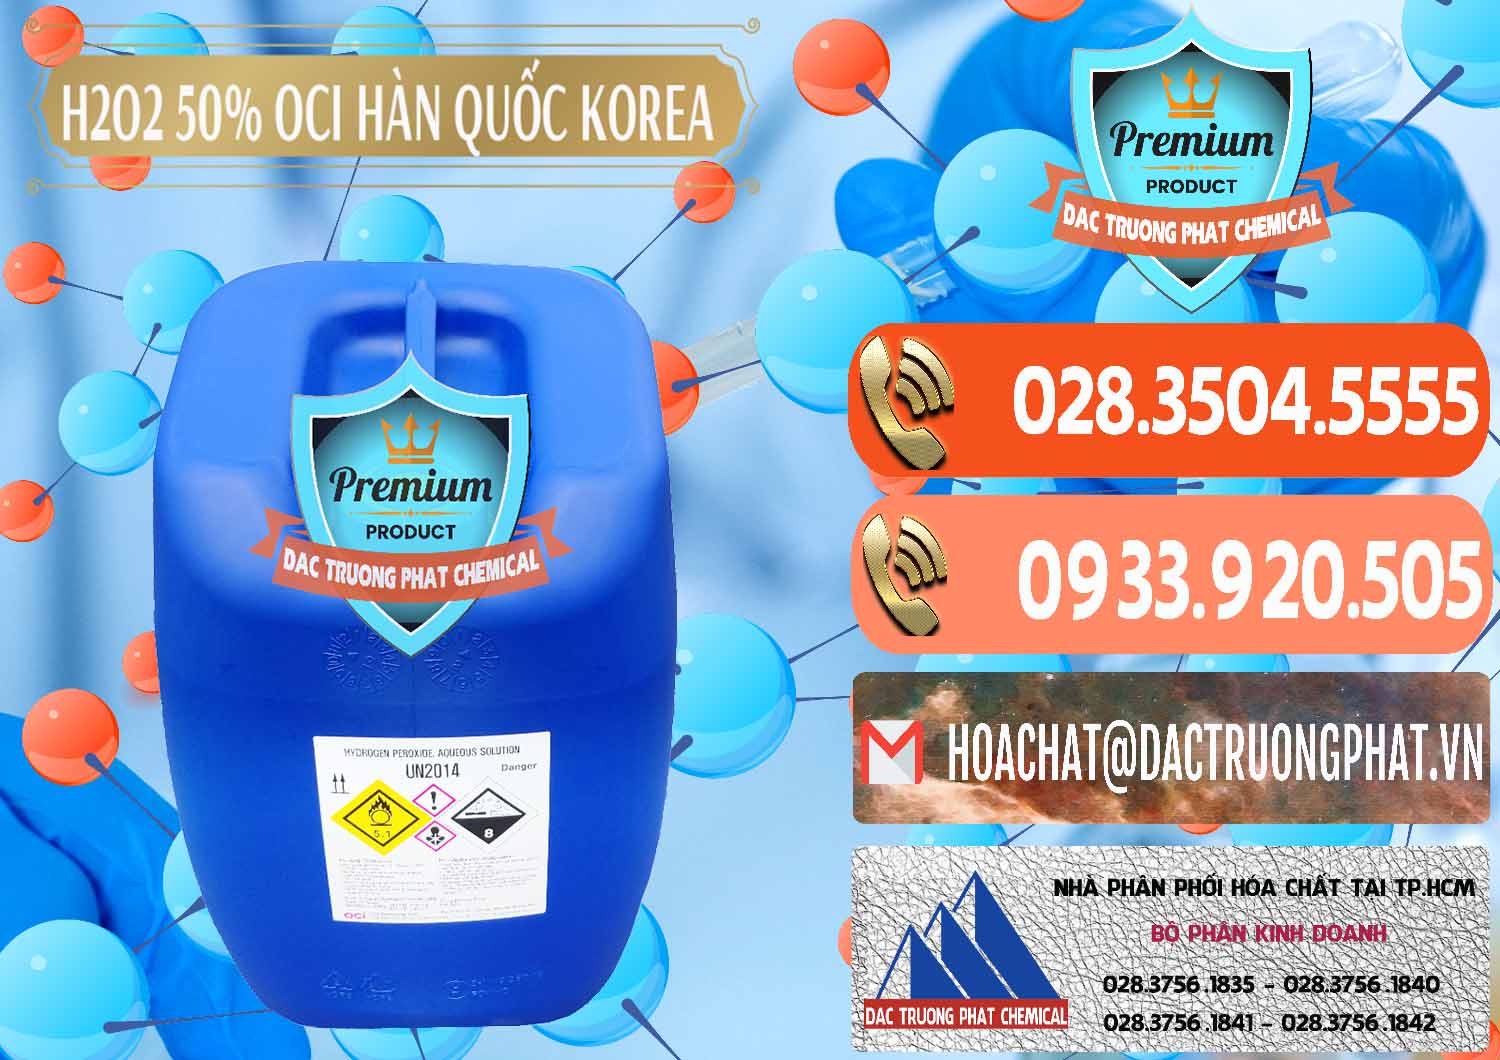 Cty chuyên phân phối & bán H2O2 - Hydrogen Peroxide 50% OCI Hàn Quốc Korea - 0075 - Công ty chuyên nhập khẩu ( phân phối ) hóa chất tại TP.HCM - hoachatmientay.com